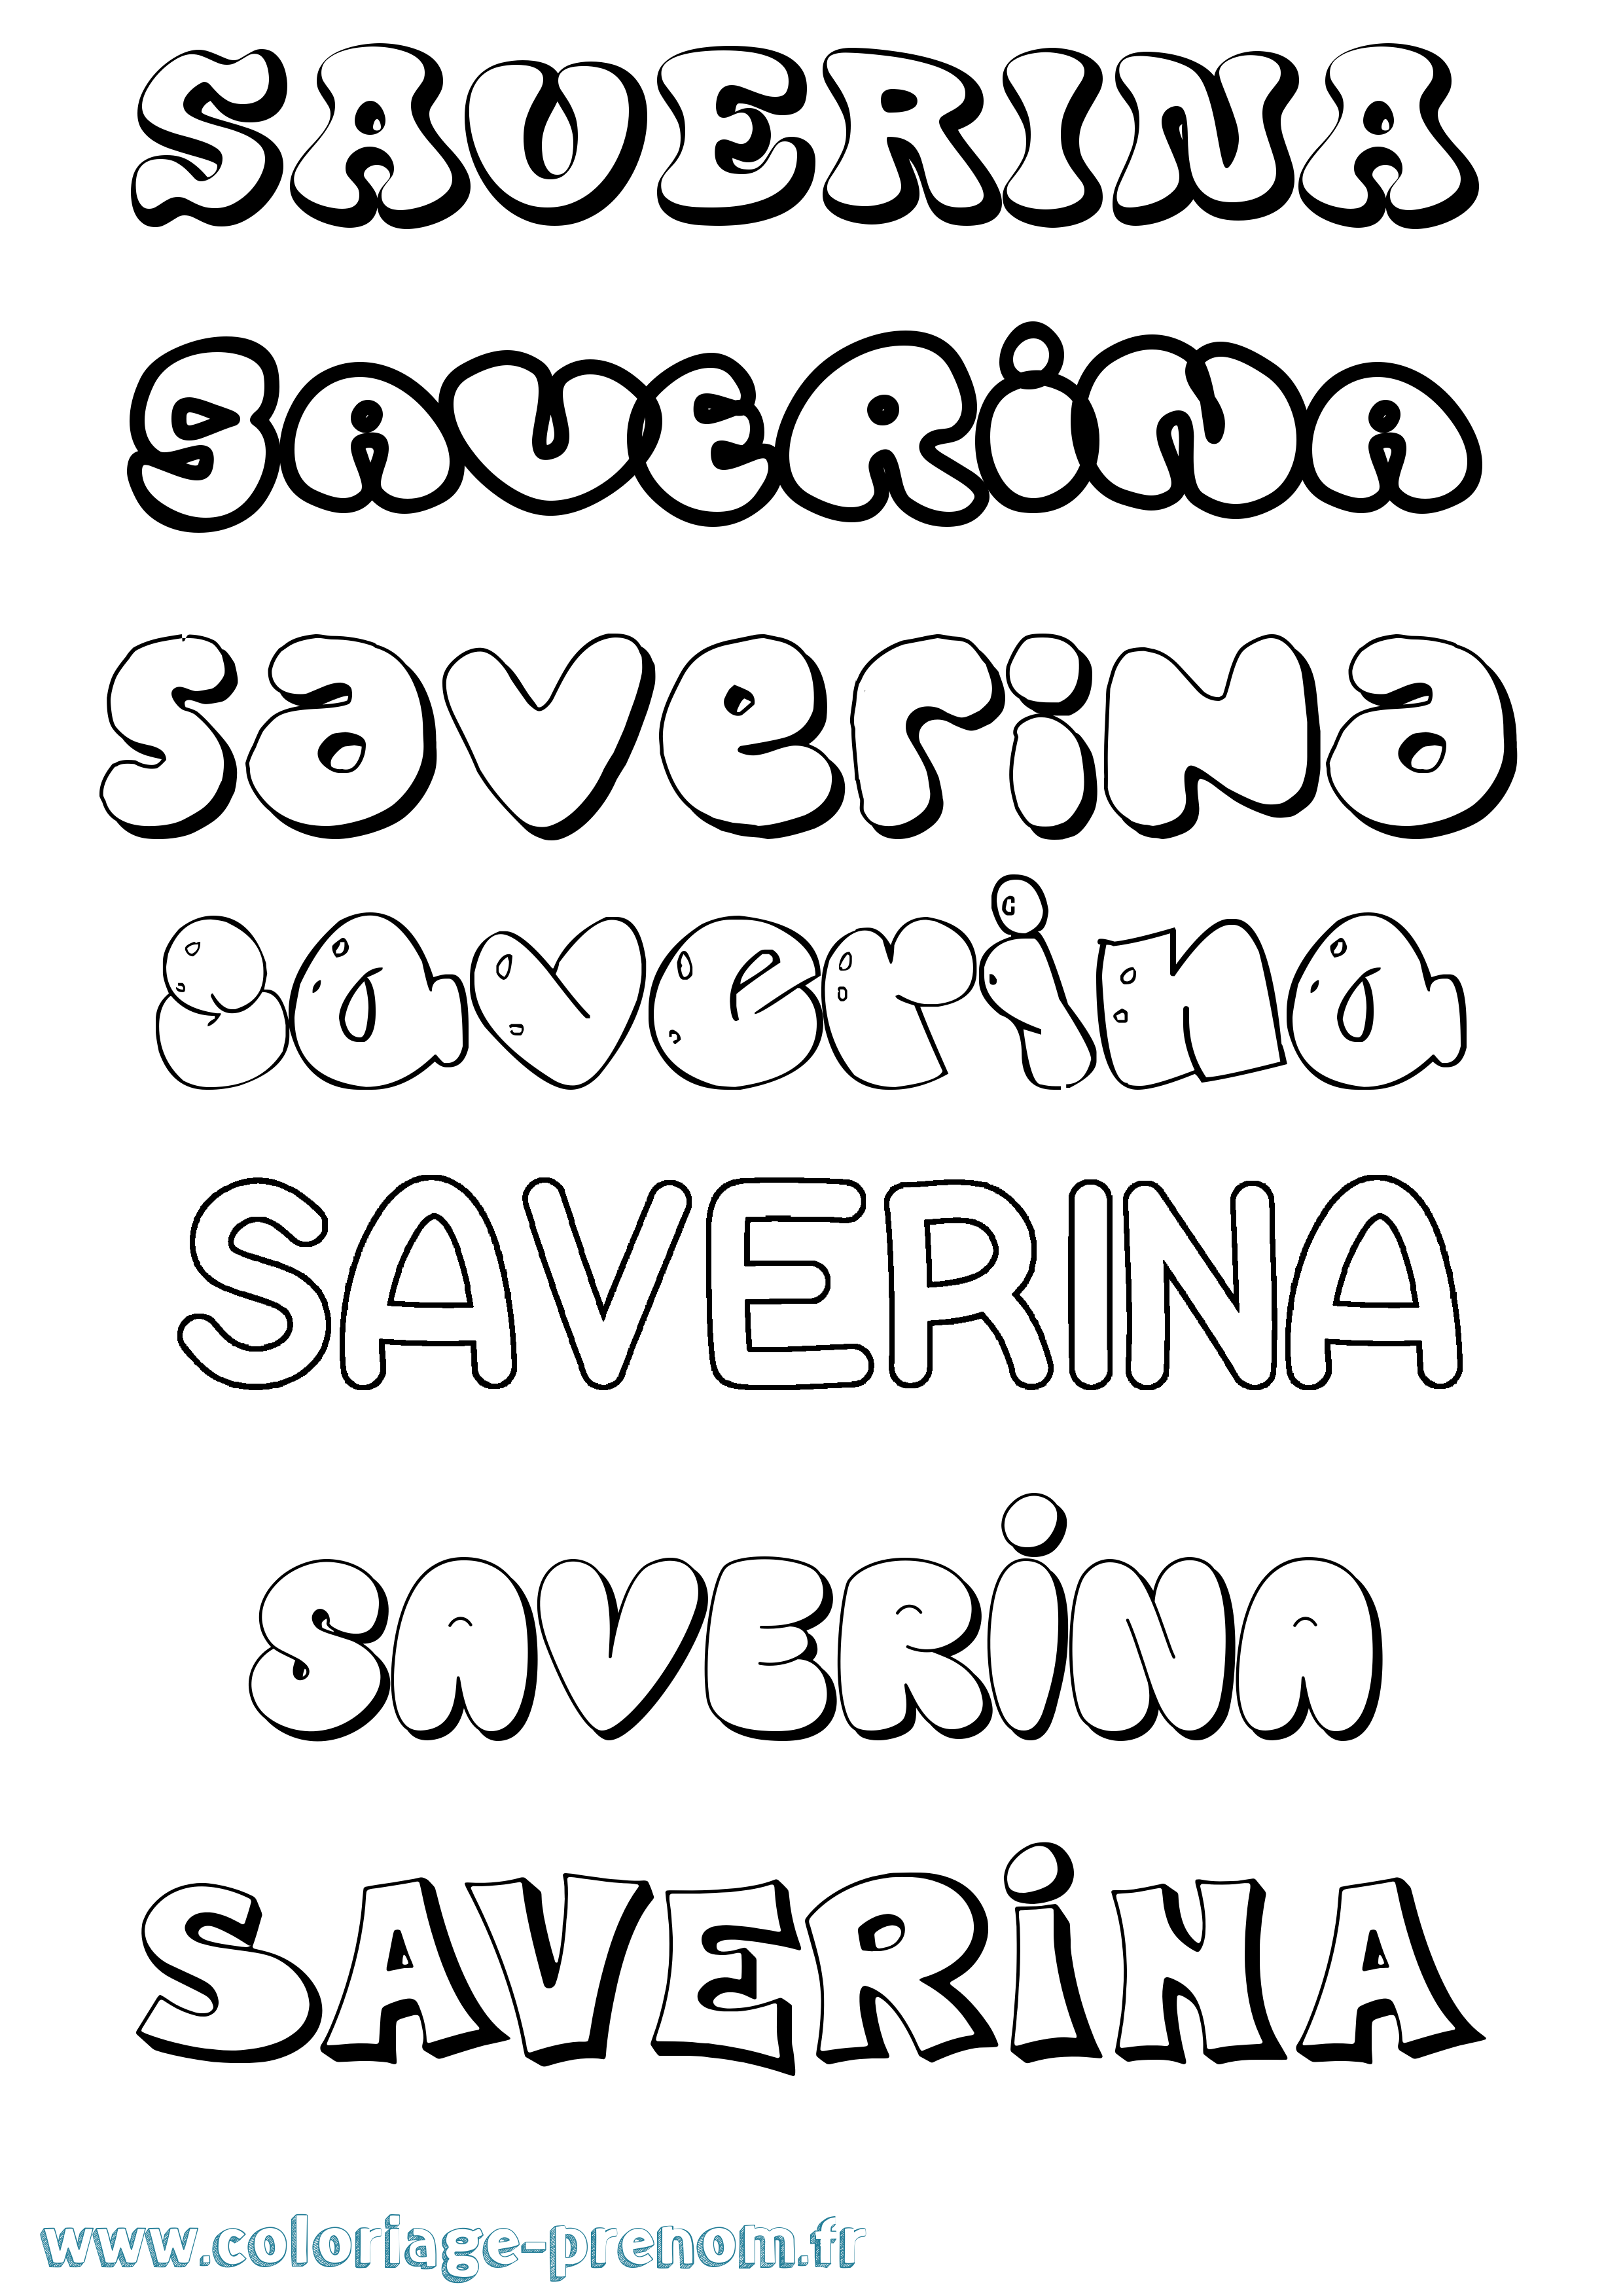 Coloriage prénom Saverina Bubble